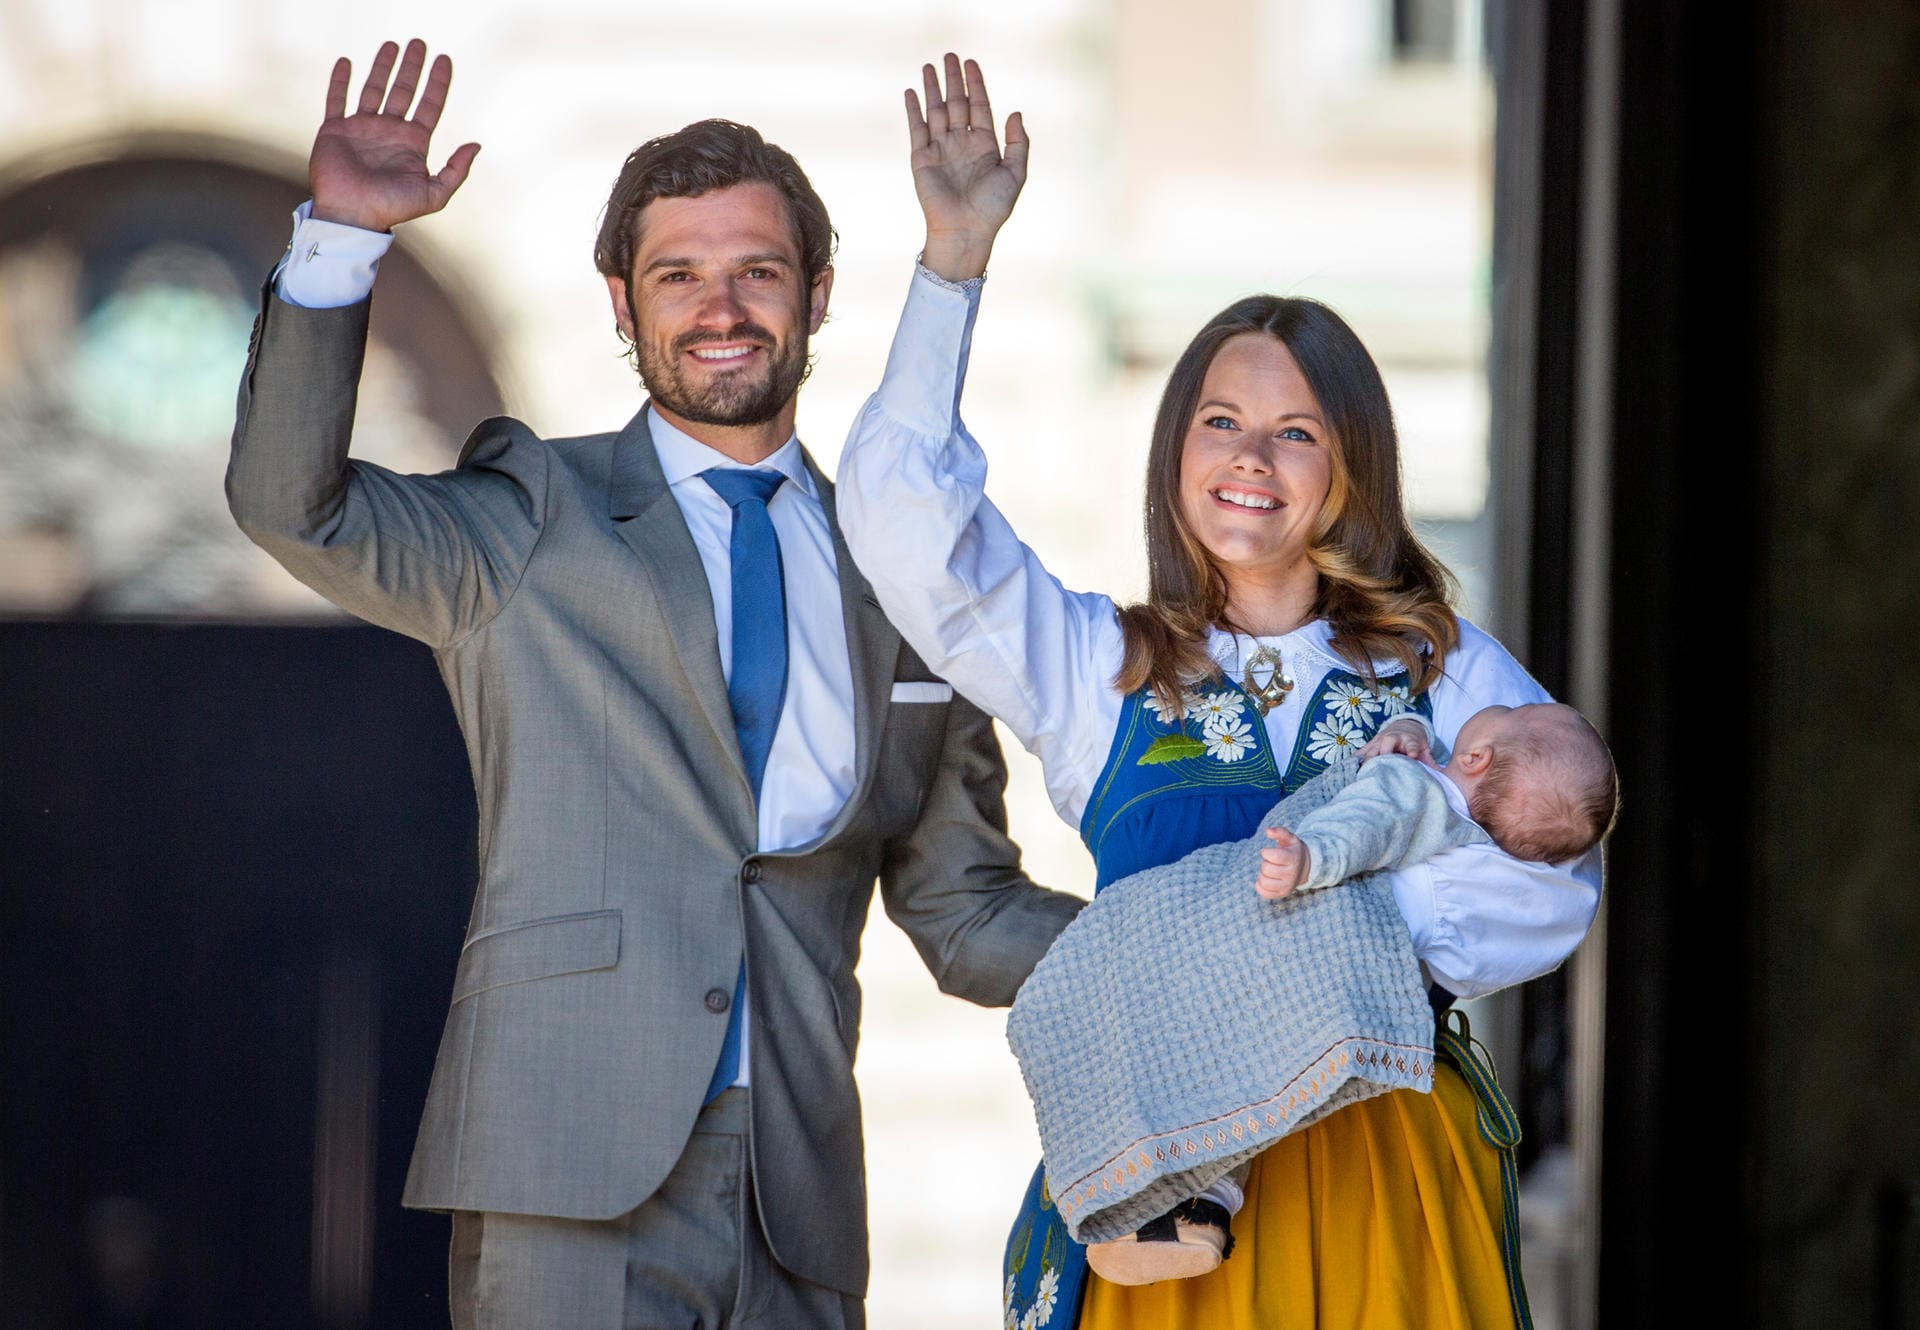 Am 19. April 2016 wurde Prinz Alexander, der erste Sohn von Prinz Carl Philip und Prinzessin Sofia, geboren. Am 6. Juni hatte der Mini-Royal beim schwedischen Nationalfeiertag seinen ersten öffentlichen Auftritt. Viel bekam er davon aber wohl nicht mit.